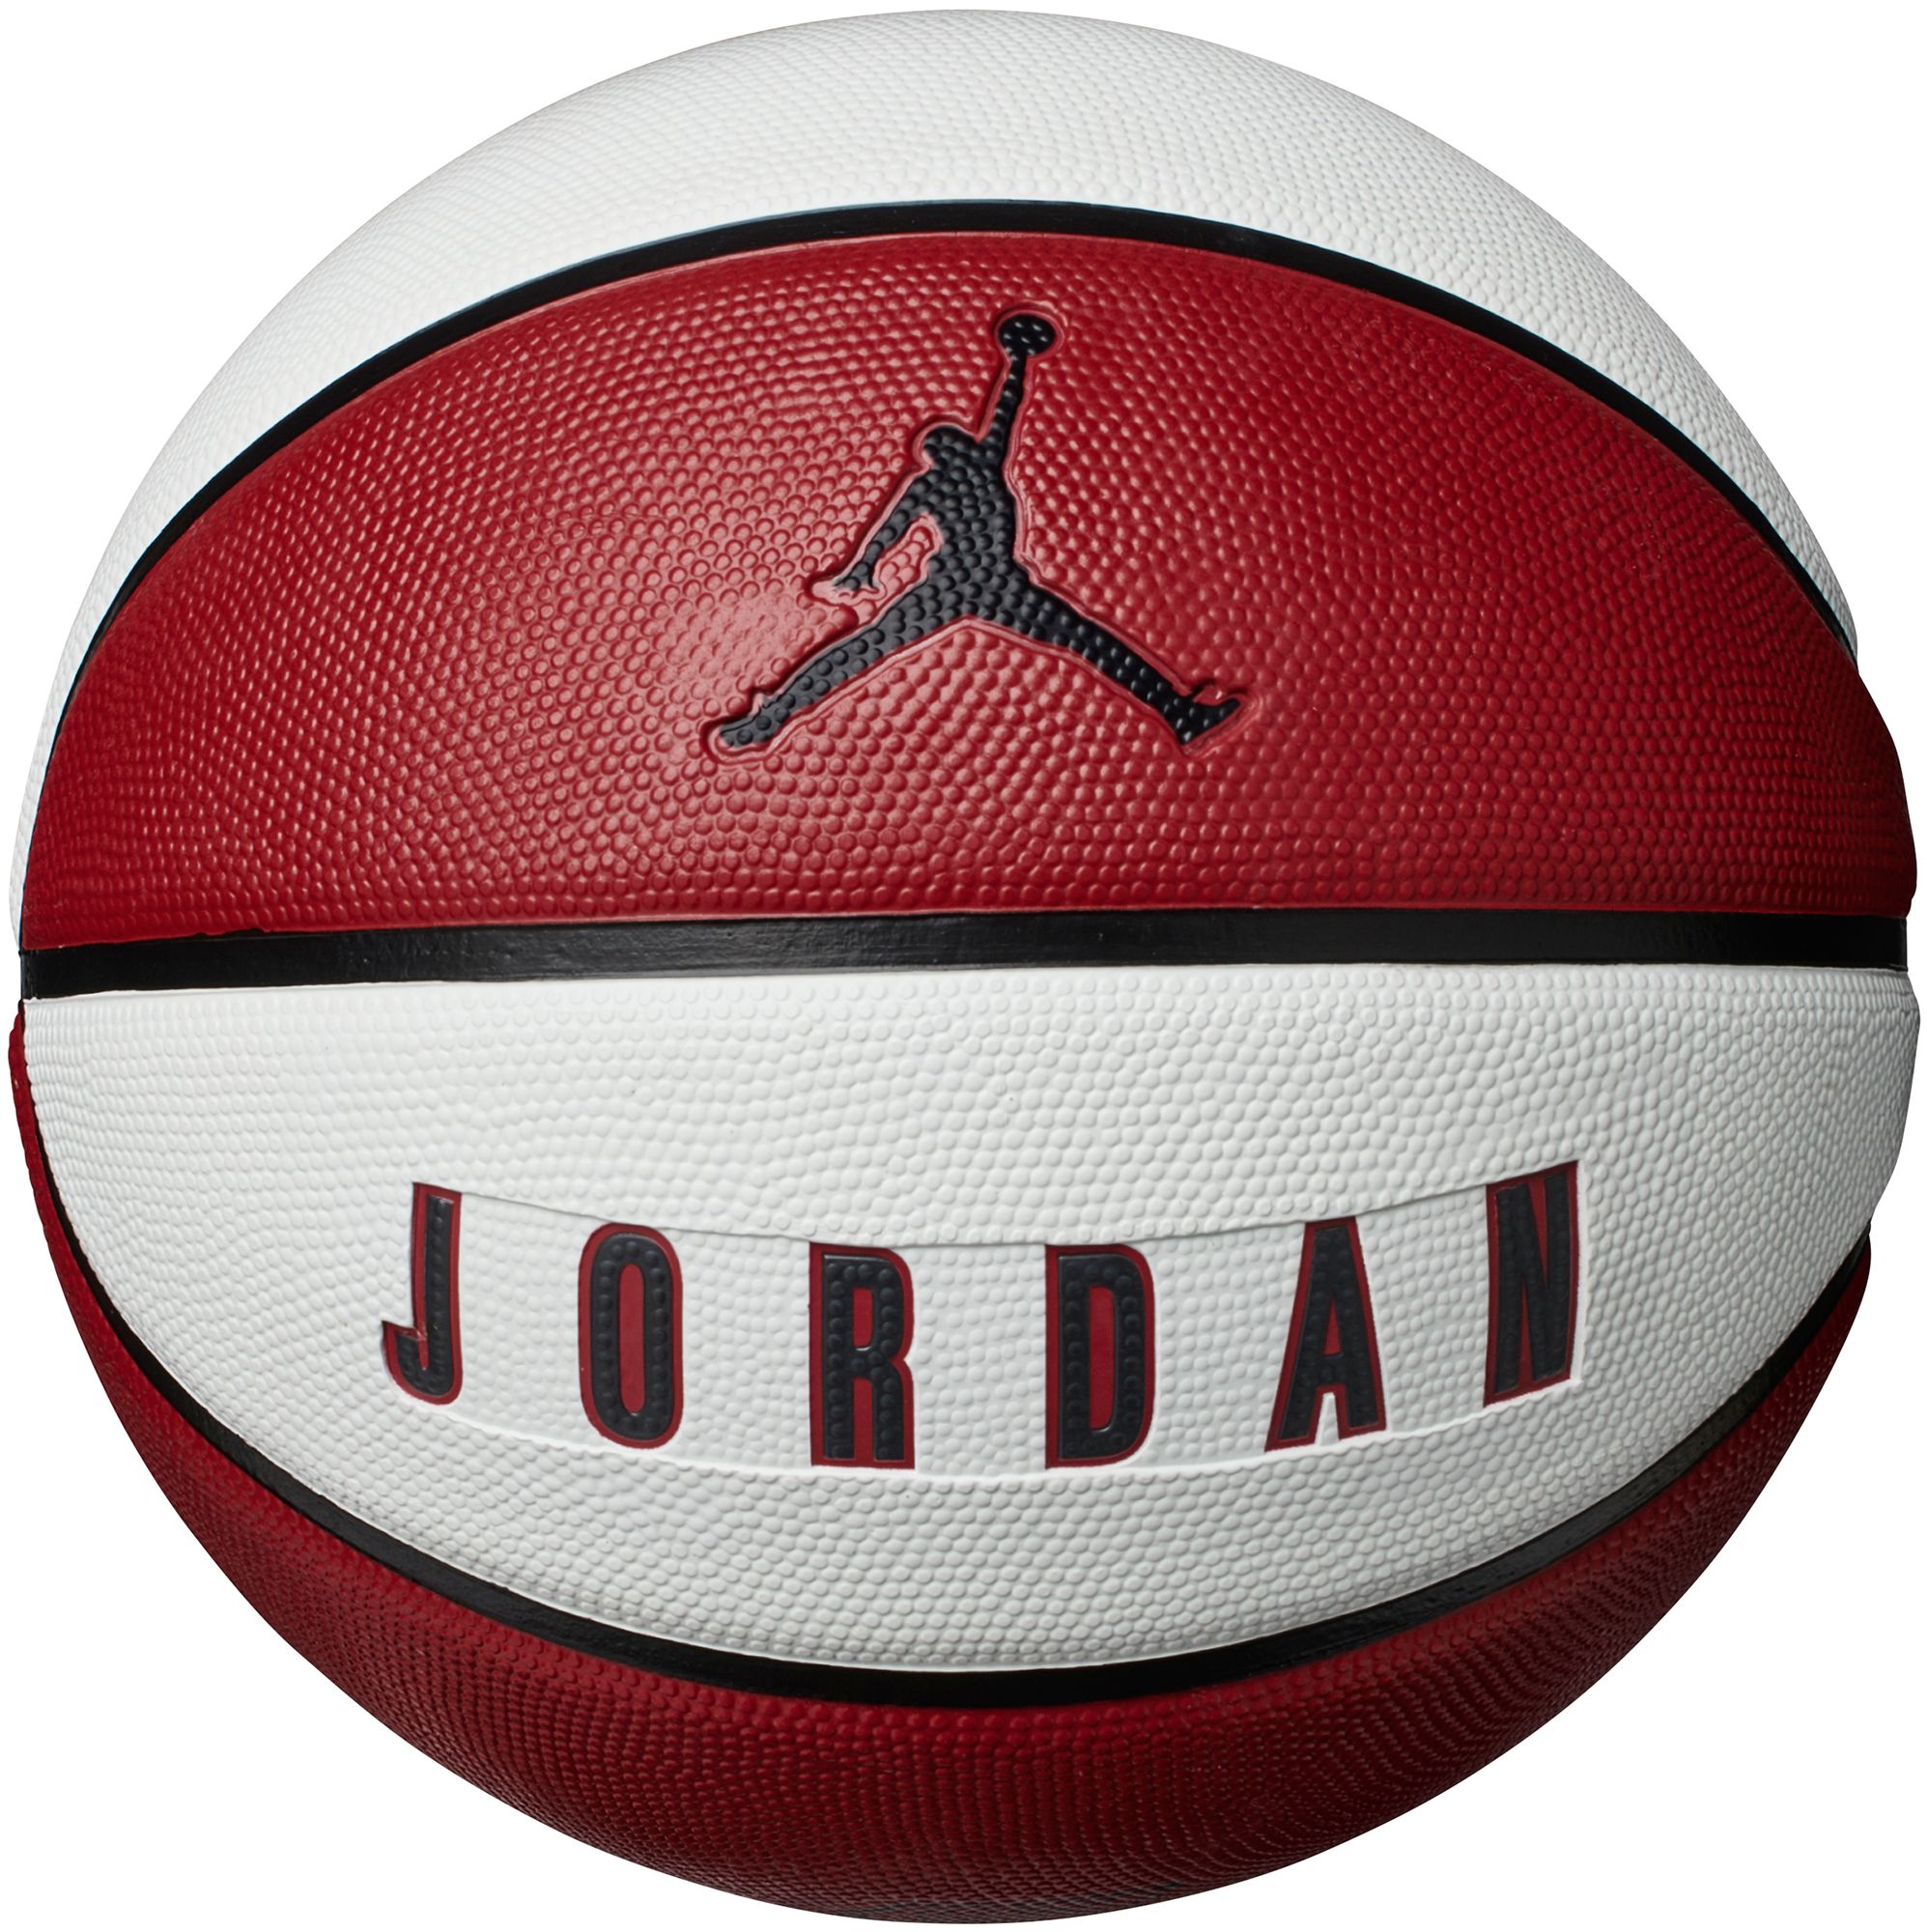 Jordan Skills Official Basketball 